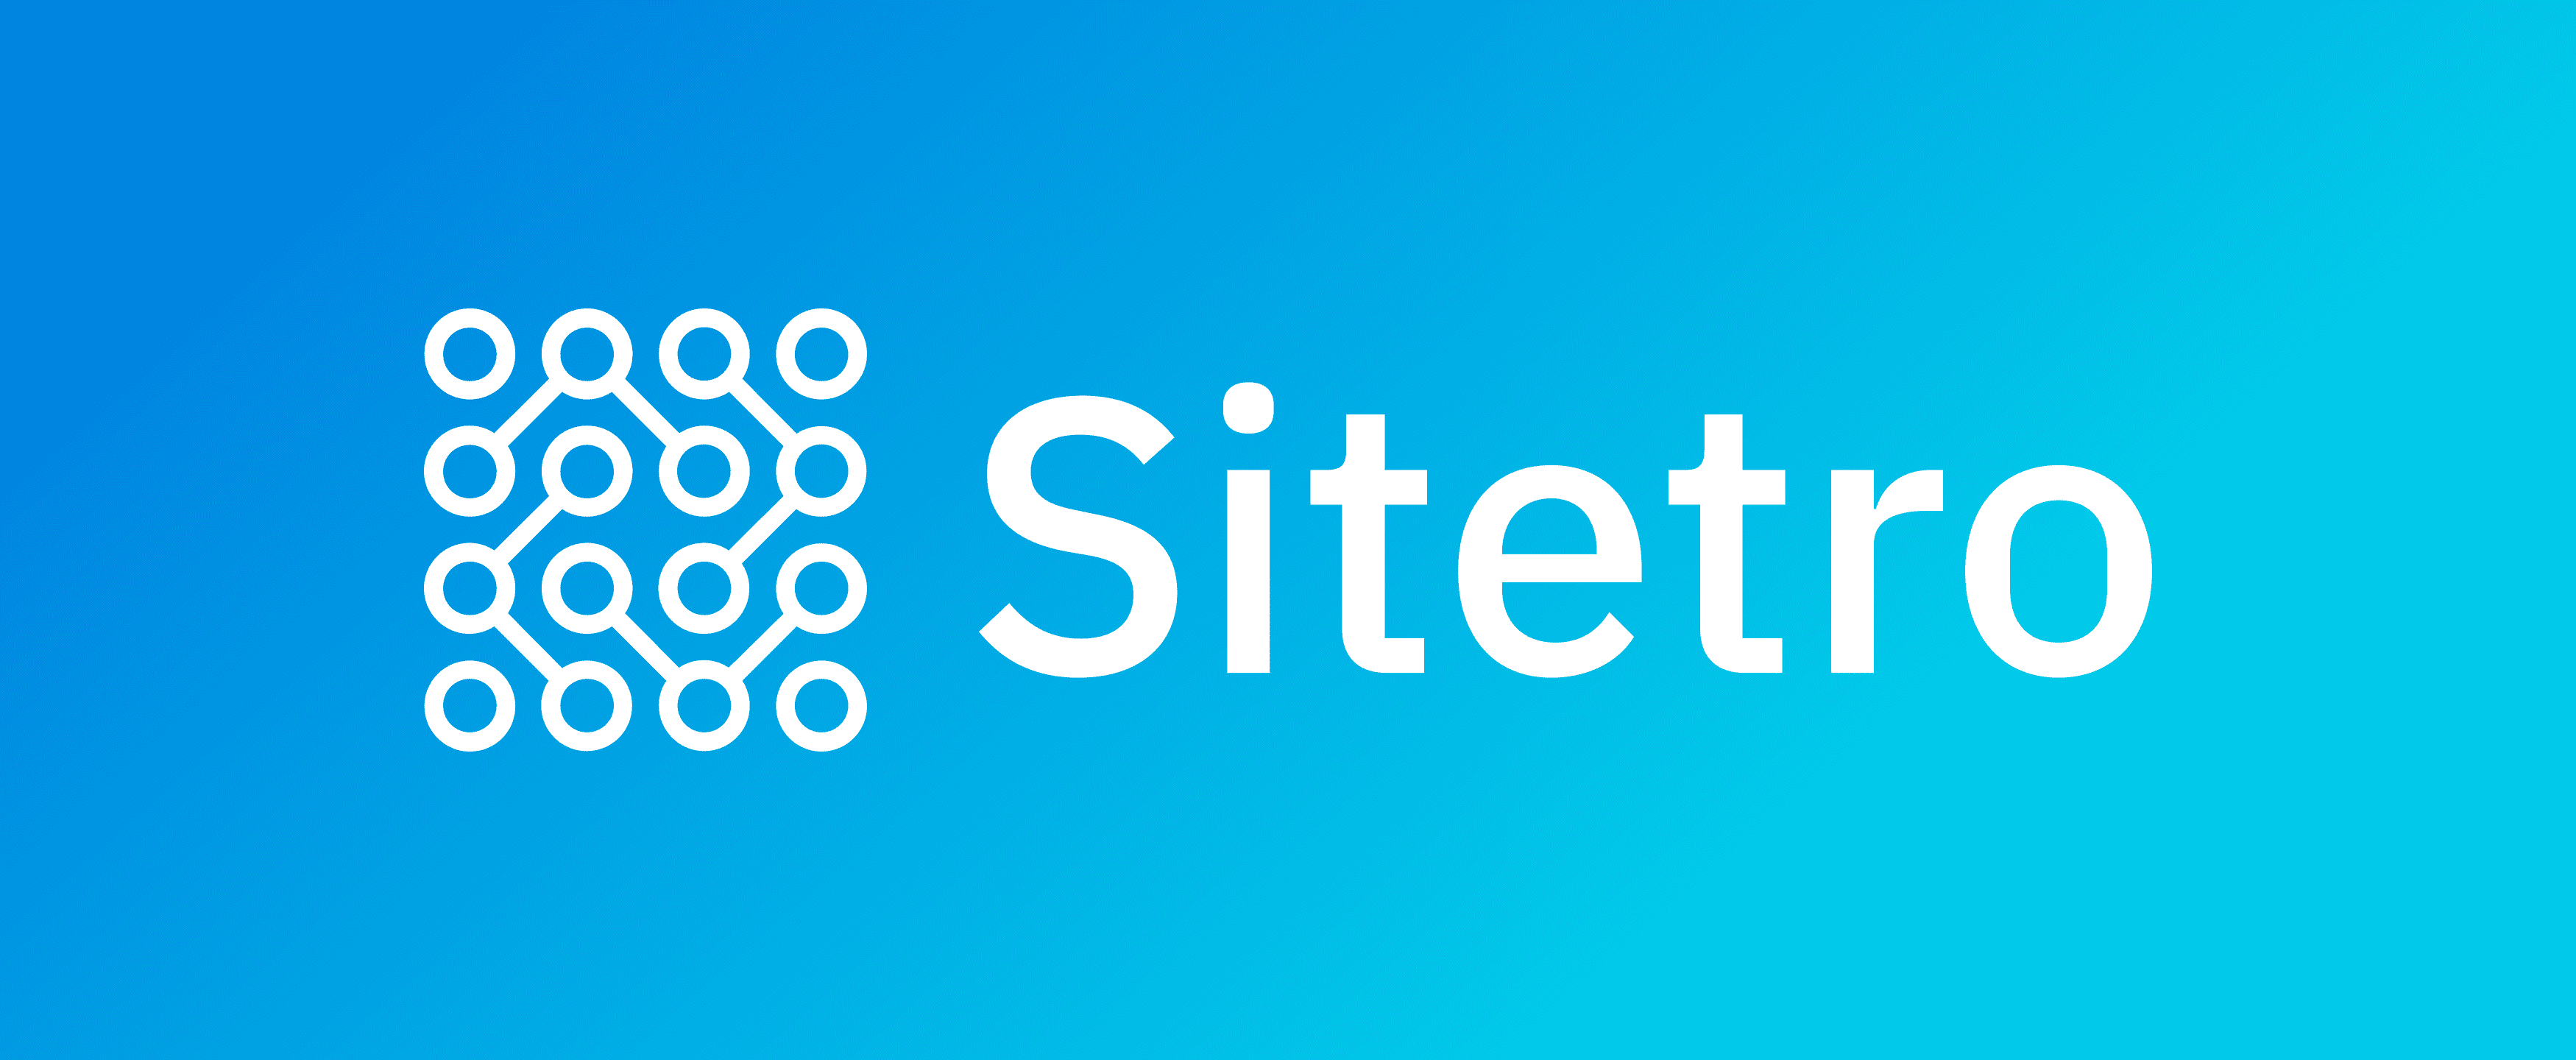 Sitetro Example Branding Photo